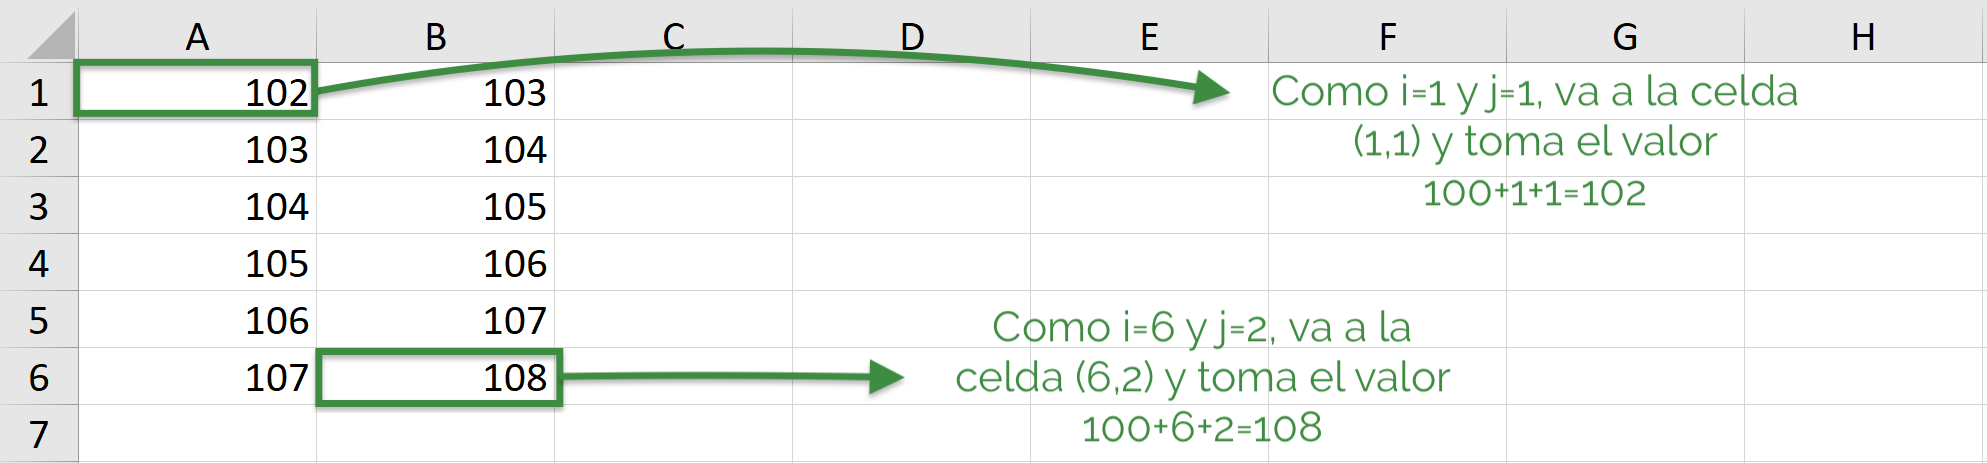 Loop doble en VBA de Excel, ejemplo explicado